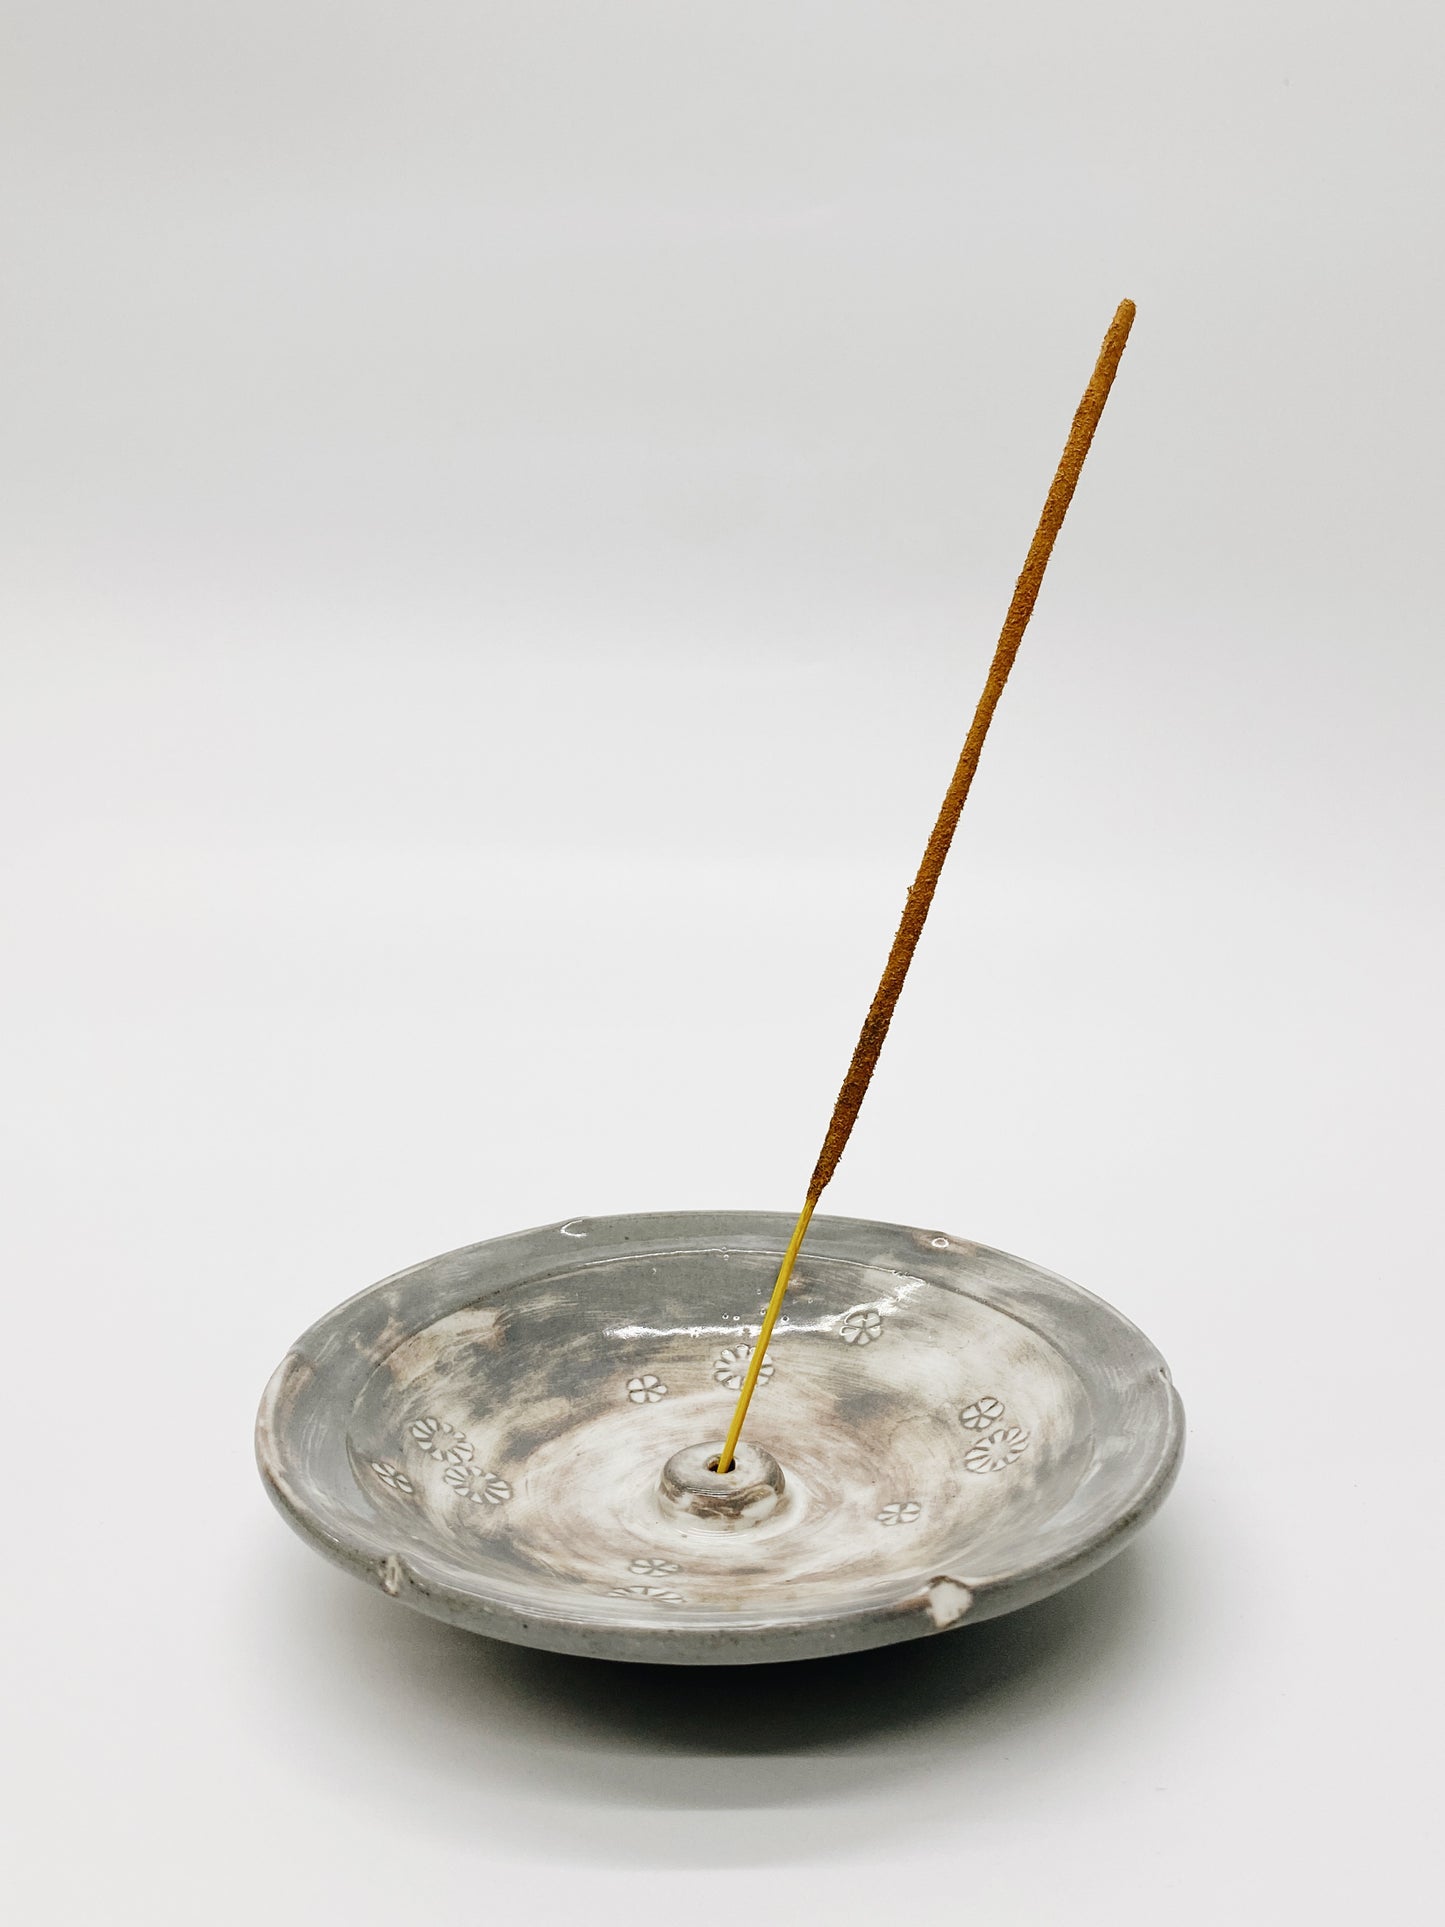 三世花香台 | Three Shima Flower Incense holder